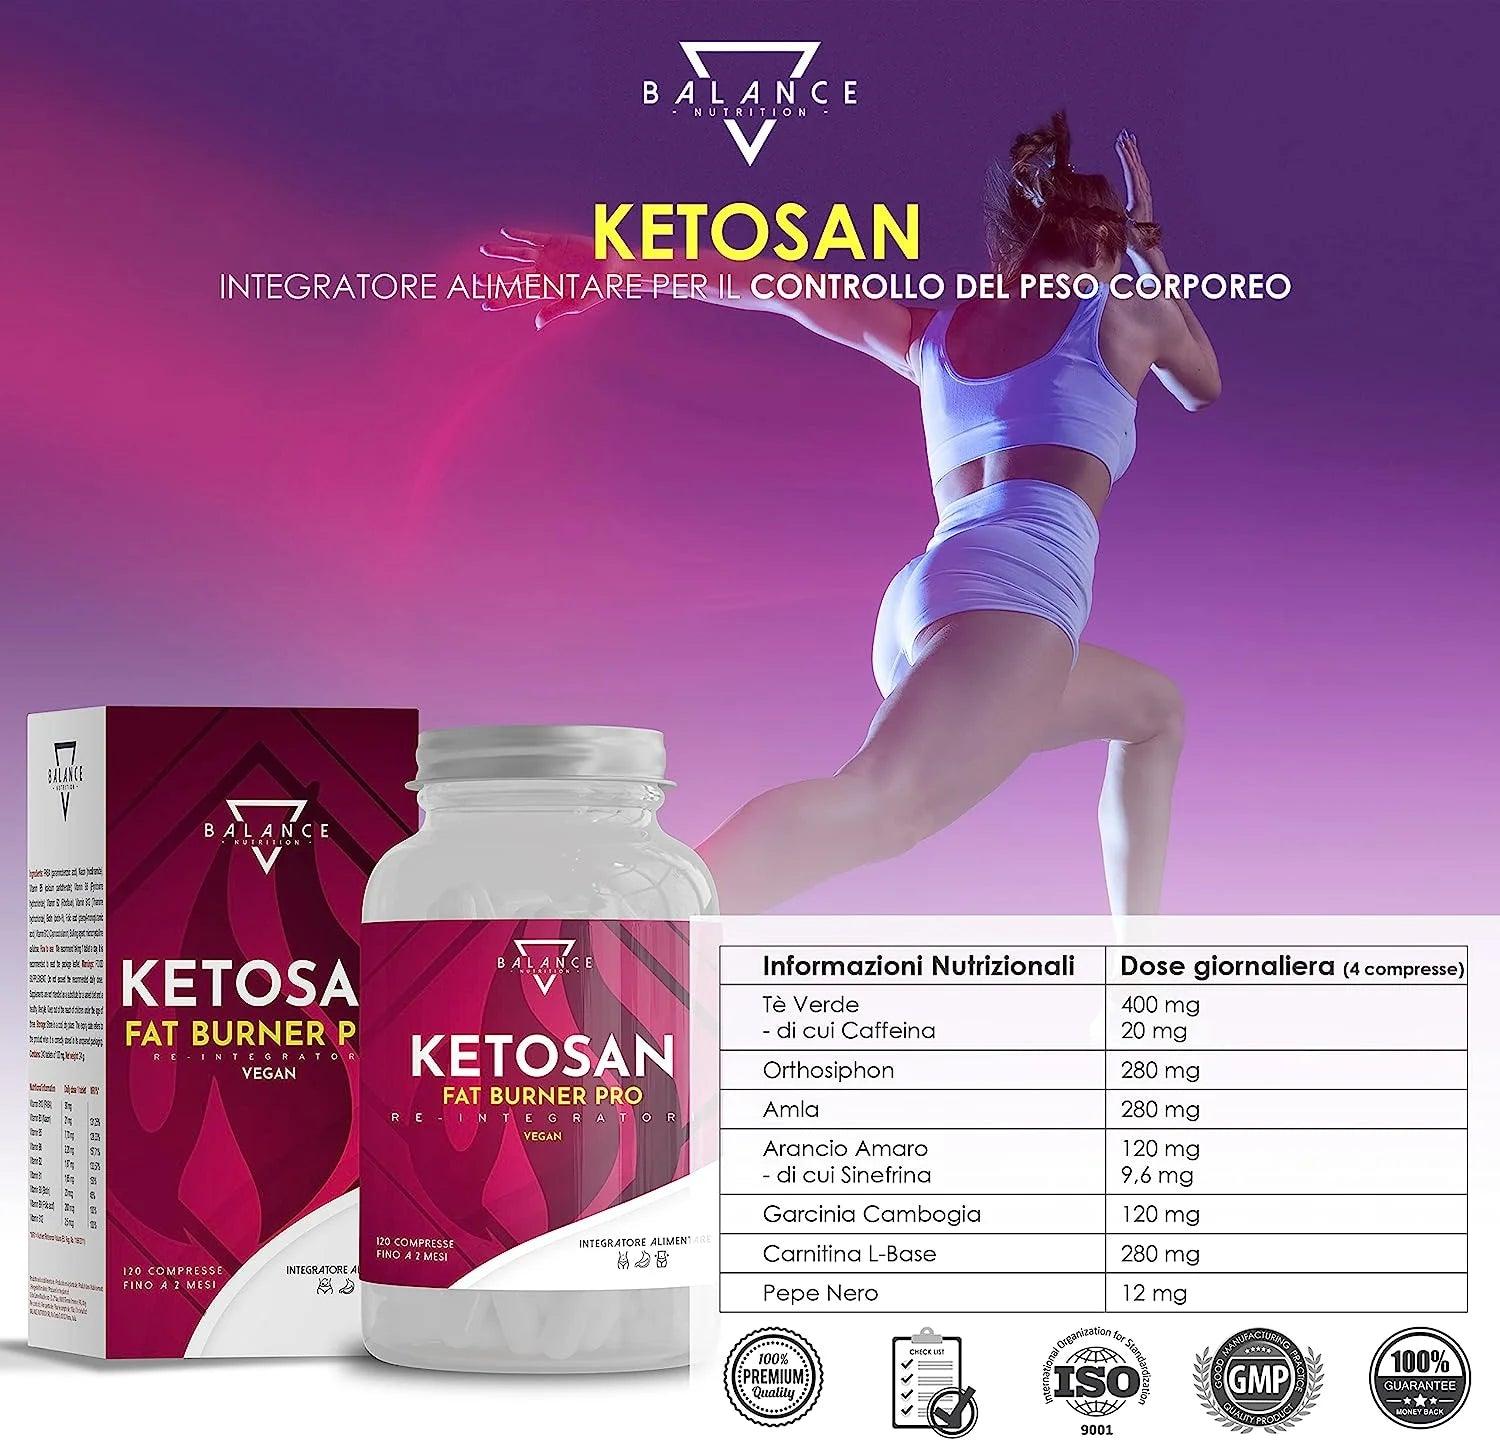 KETOSAN™ Integratore alimentare per il controllo del Peso Corporeo con azione snellente e drenante - Balance Nutrition